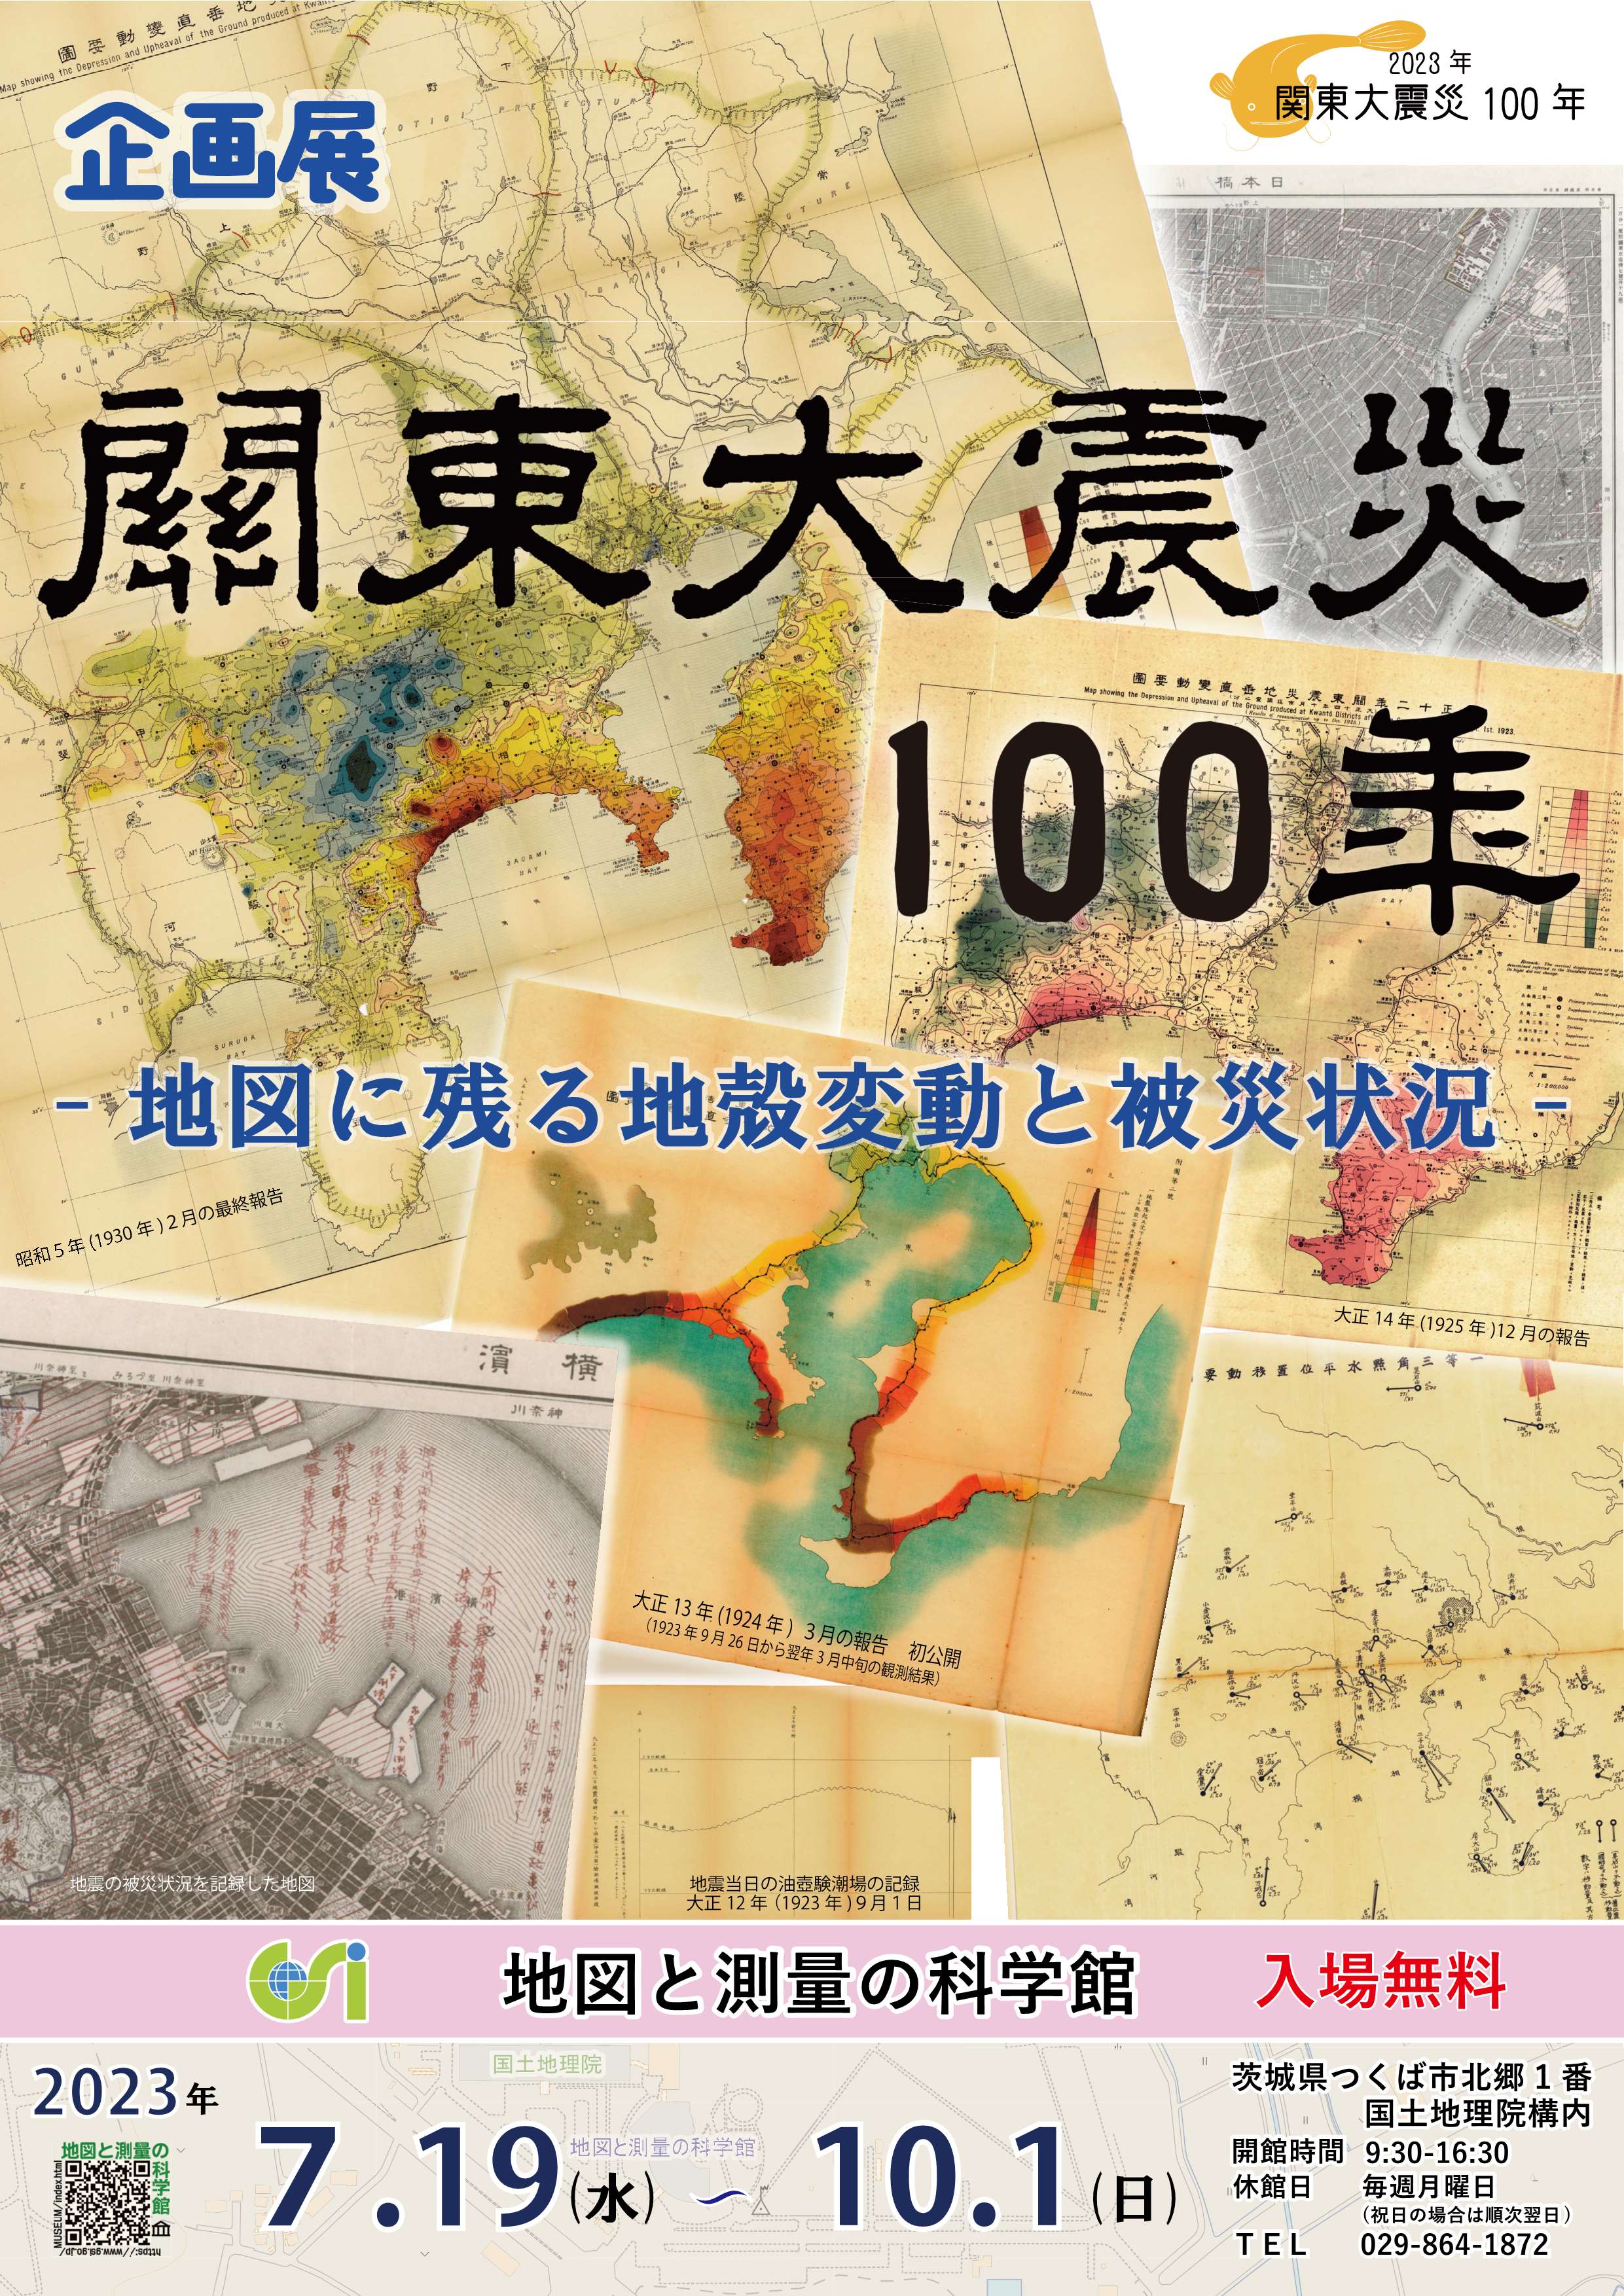 ポスター画像　企画展「関東大震災100年 -地図に残る地殻変動と被災状況-」